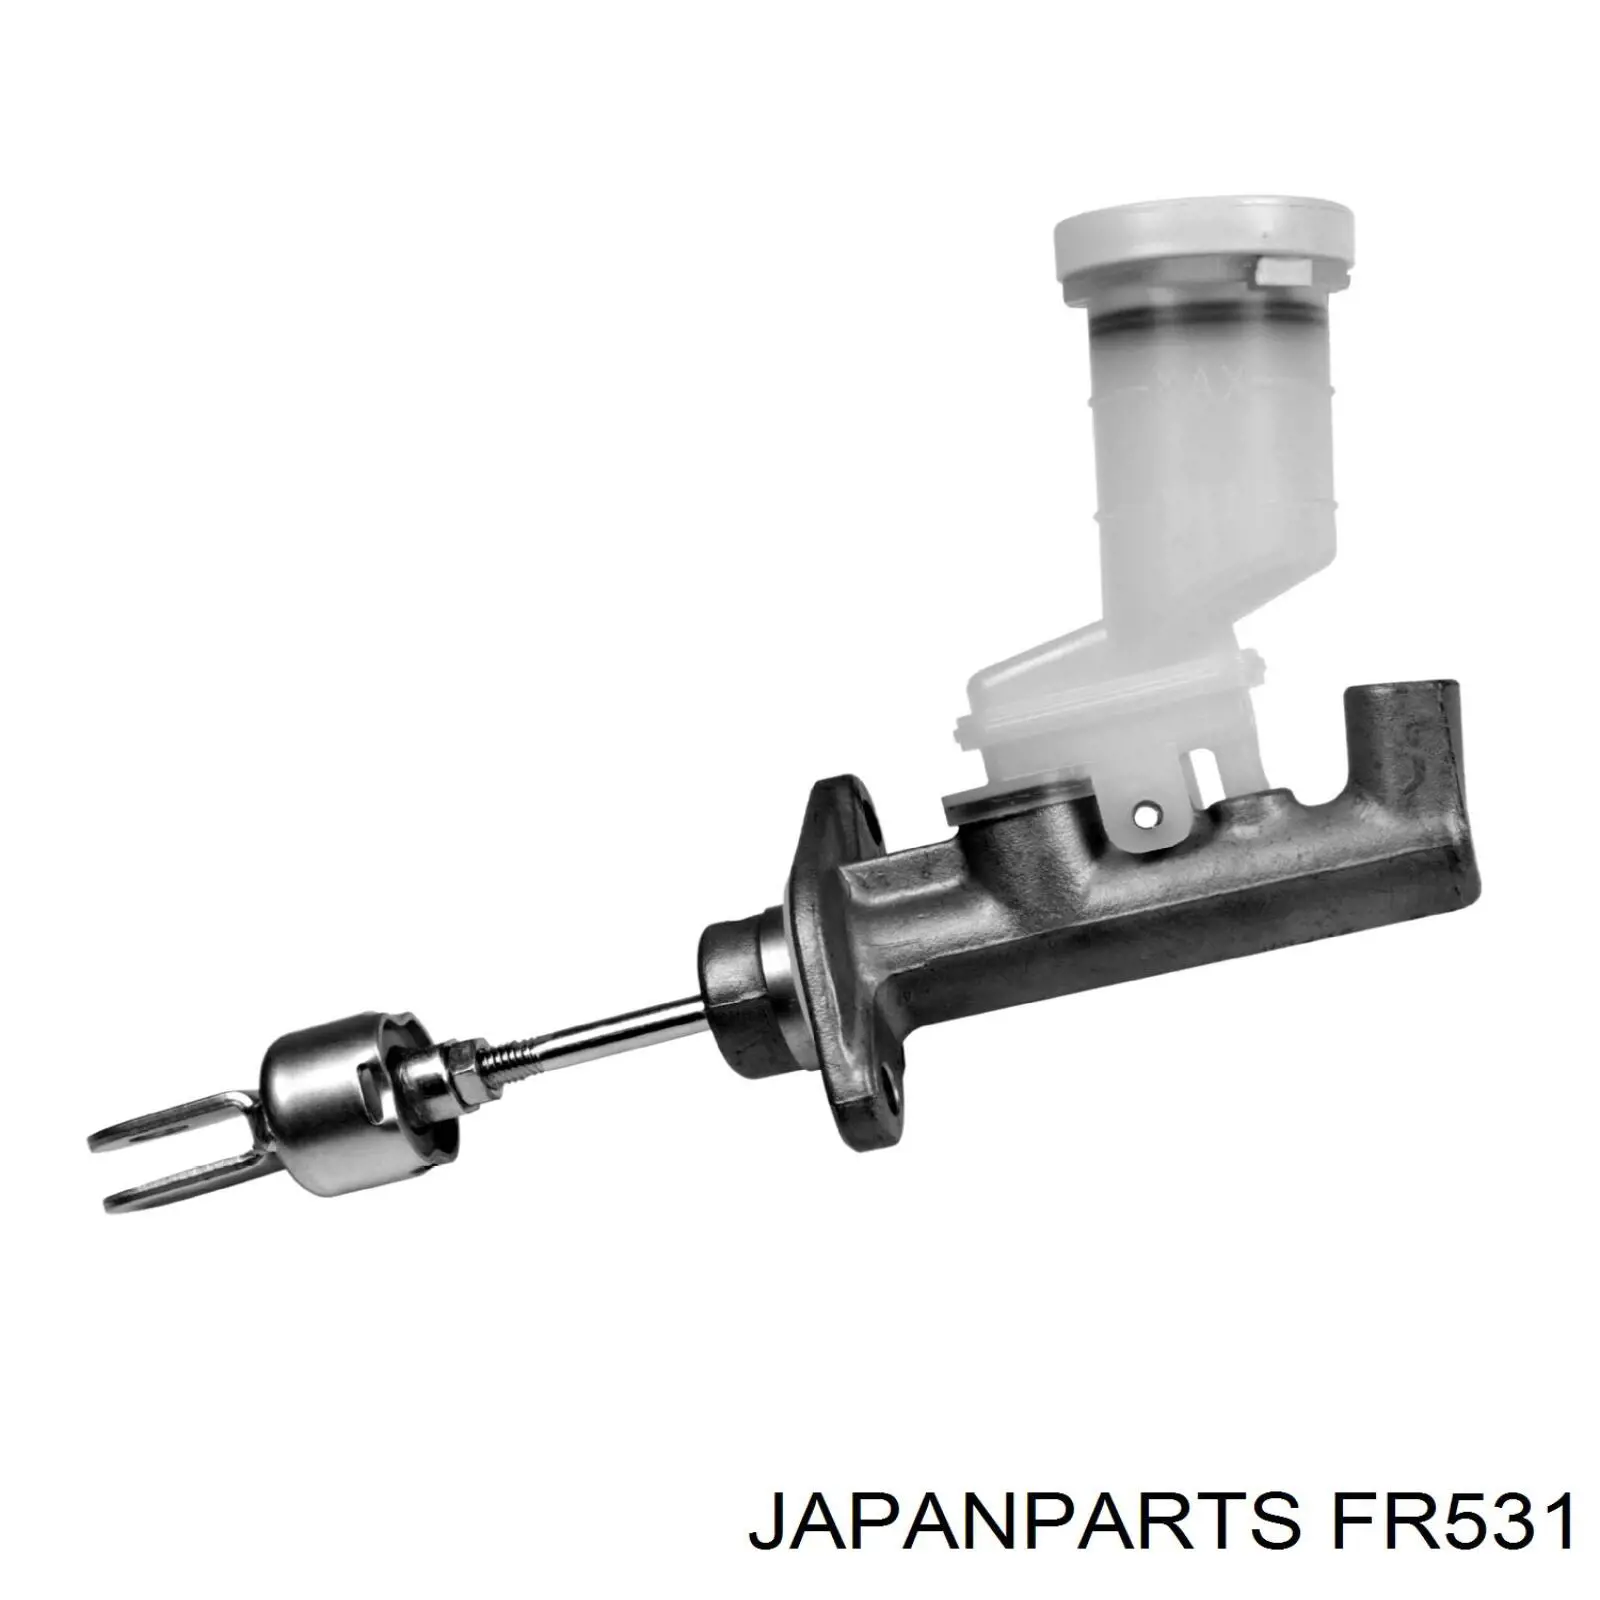 FR-531 Japan Parts cilindro maestro de embrague